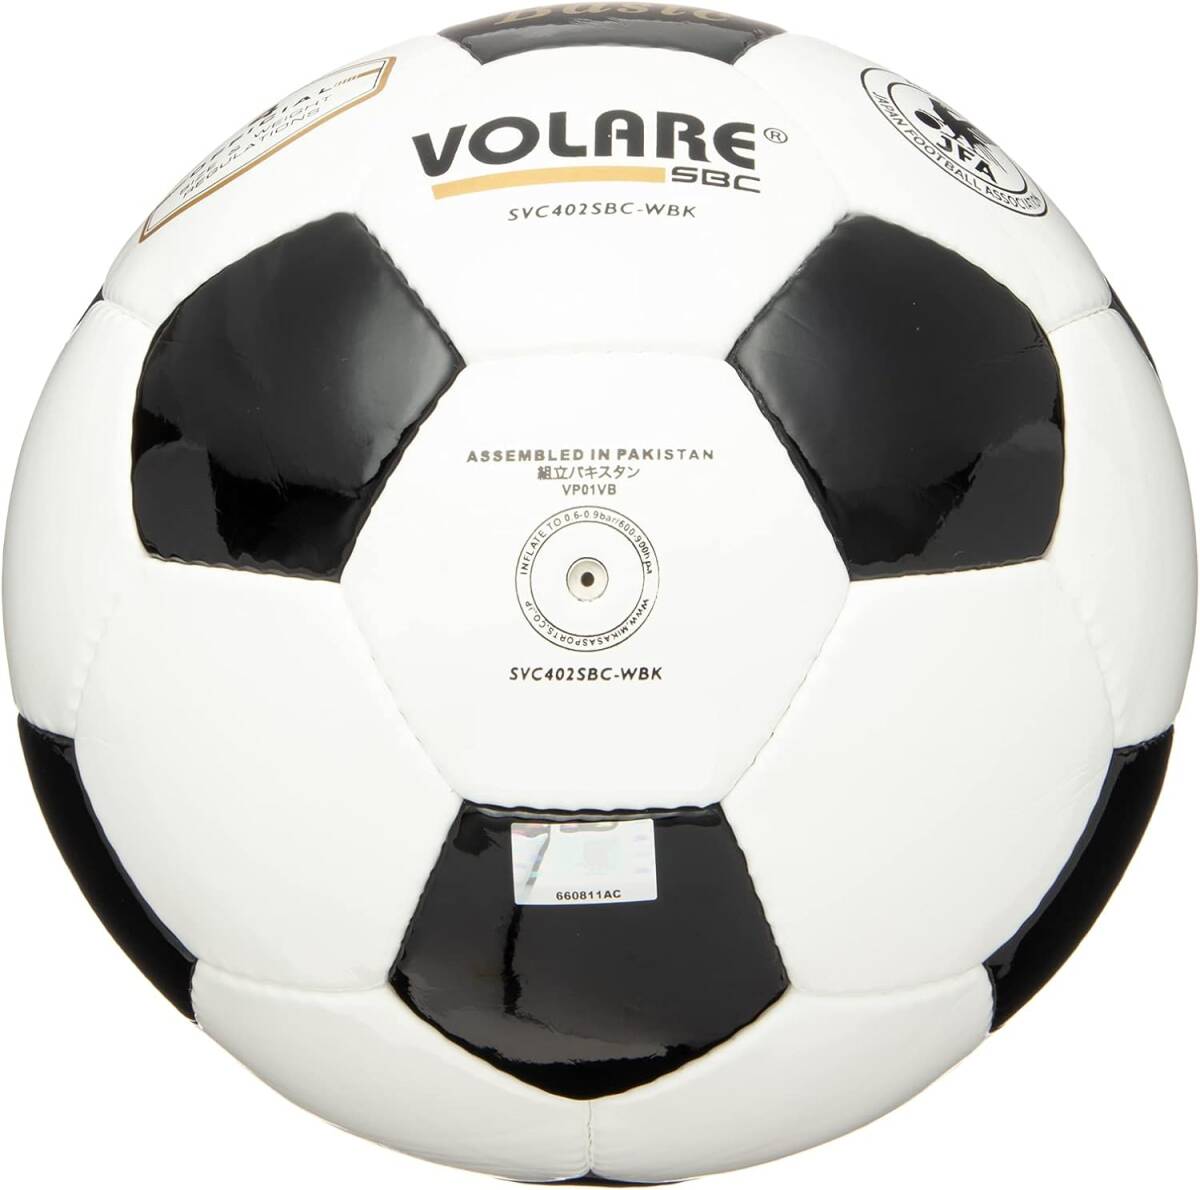  футбольный мяч    Япония  футбол  ...  проверка  лампа   4 номер   ( небольшой ... для ) SVC402SBC  рекомендация  внутри  ...0.8(kgf/)